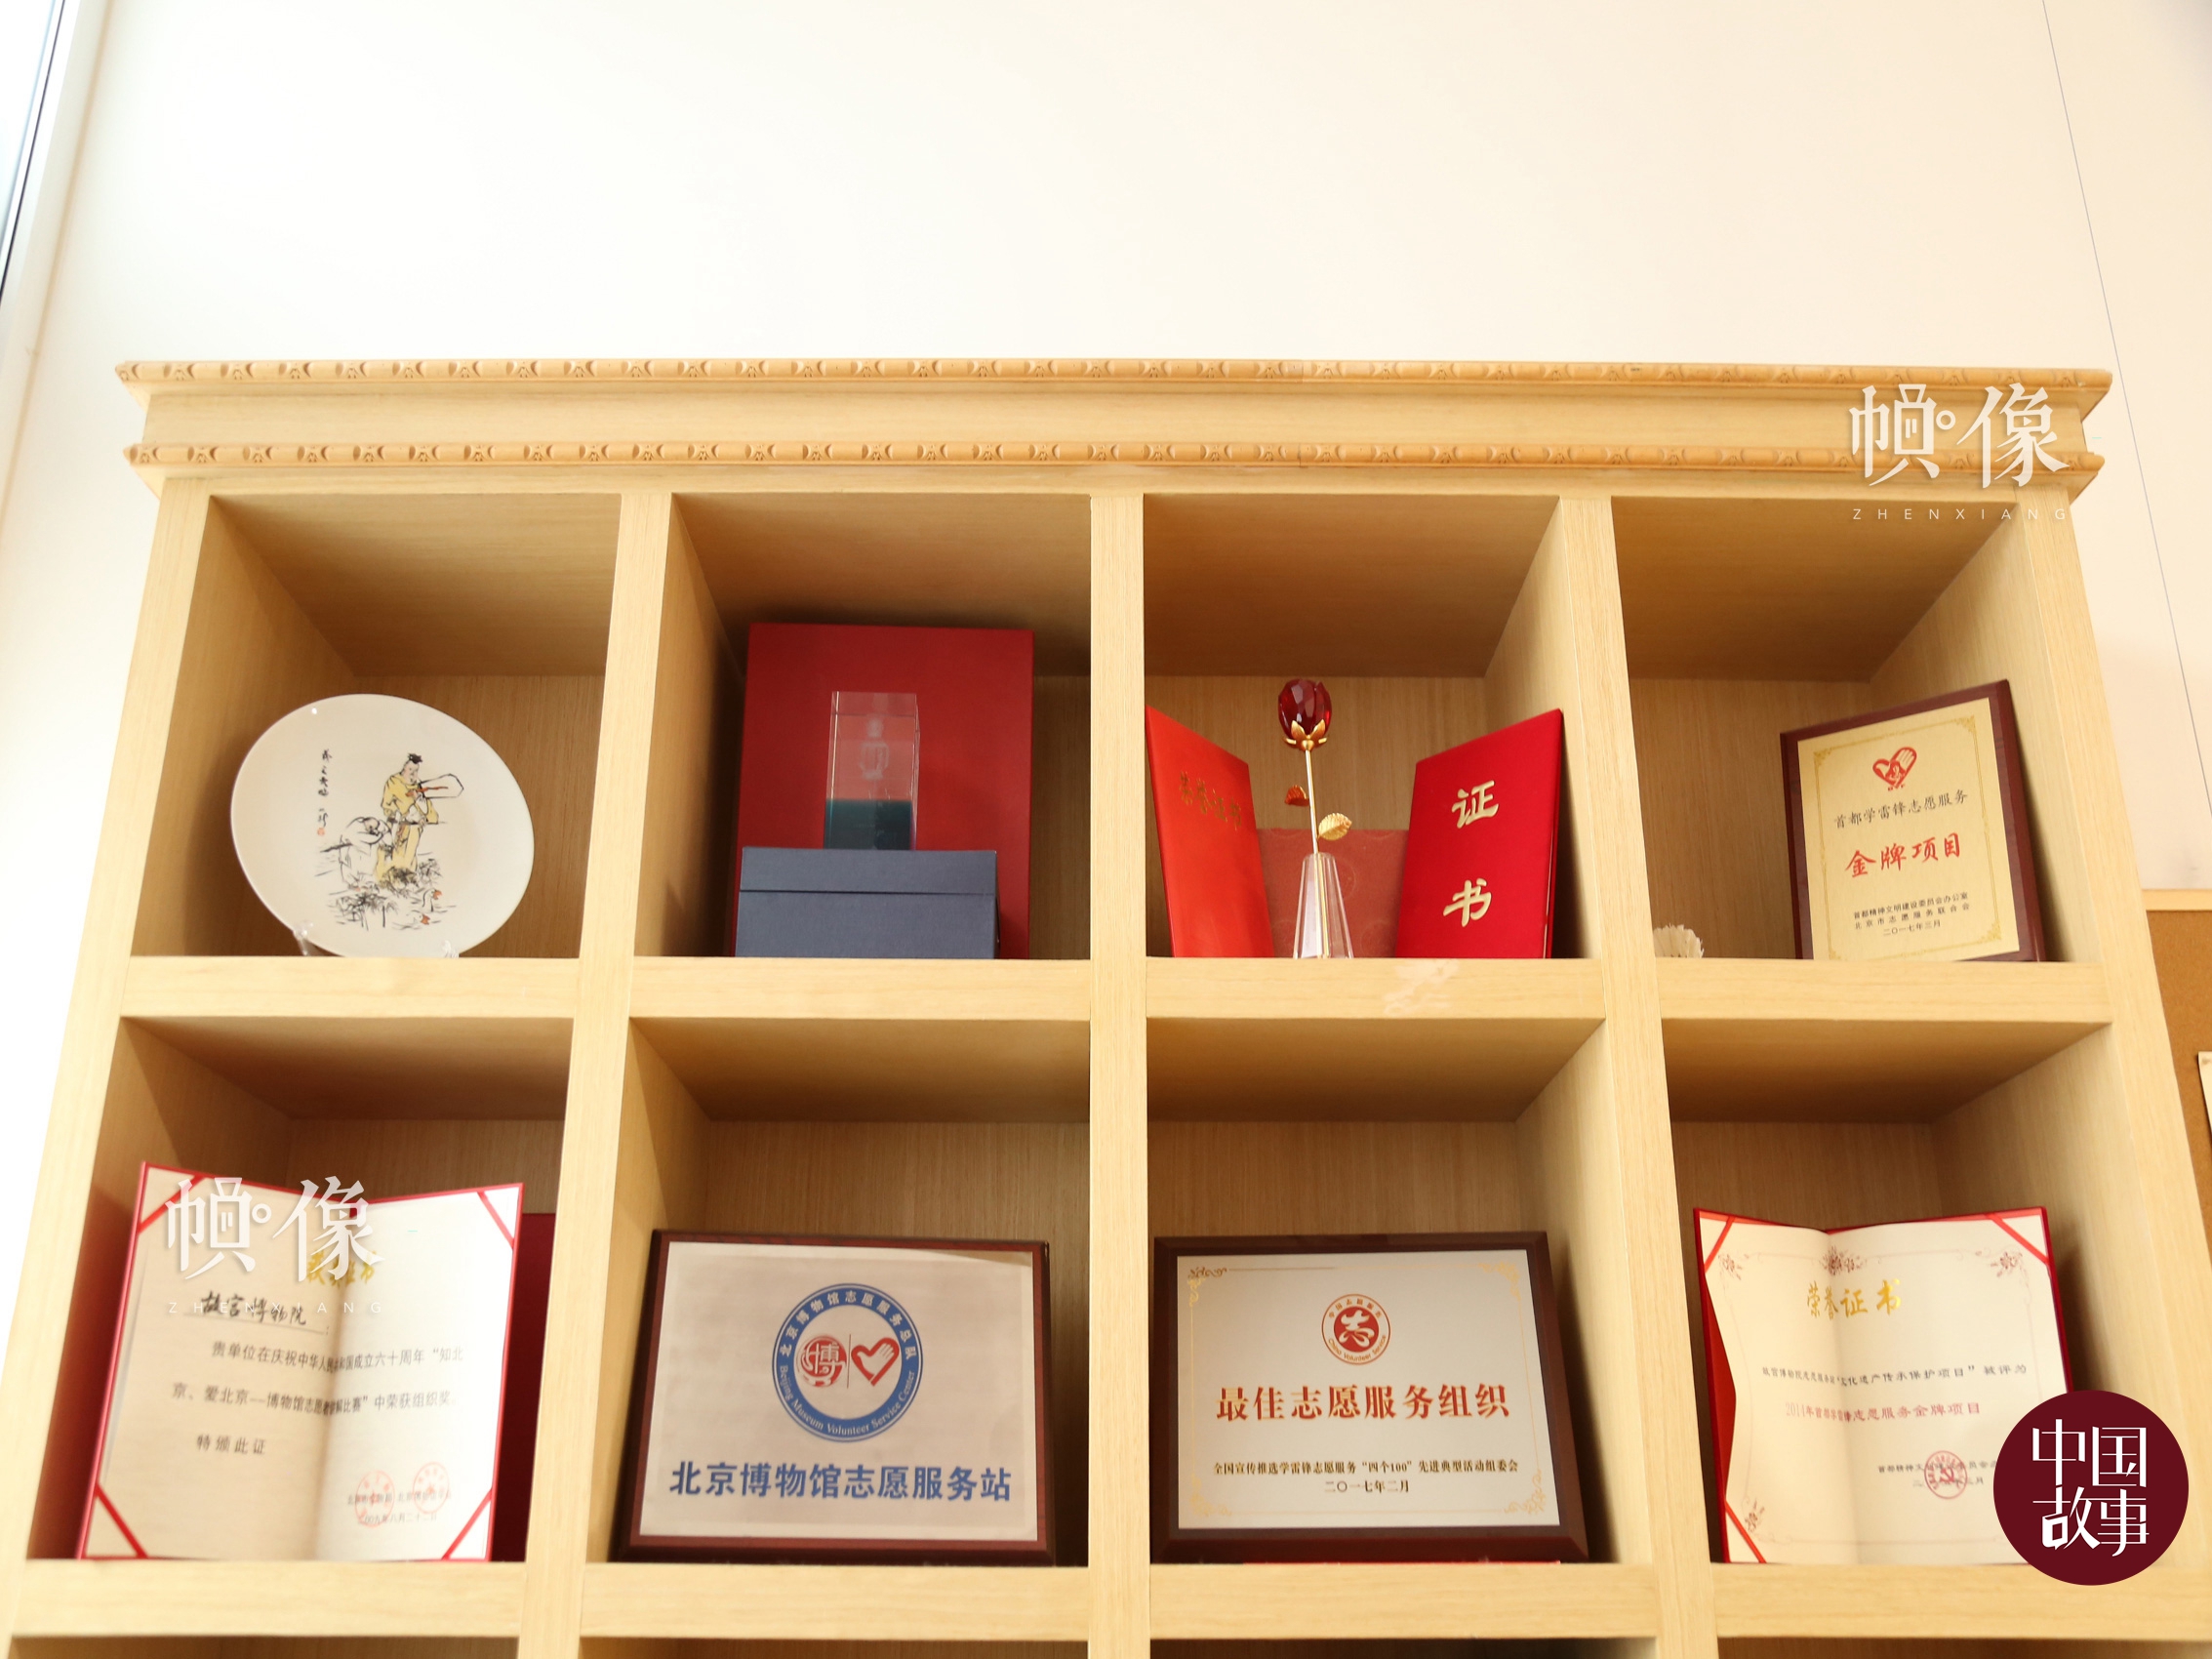 故宫志愿者曾获得的荣誉展柜。中国网记者 赵超 摄